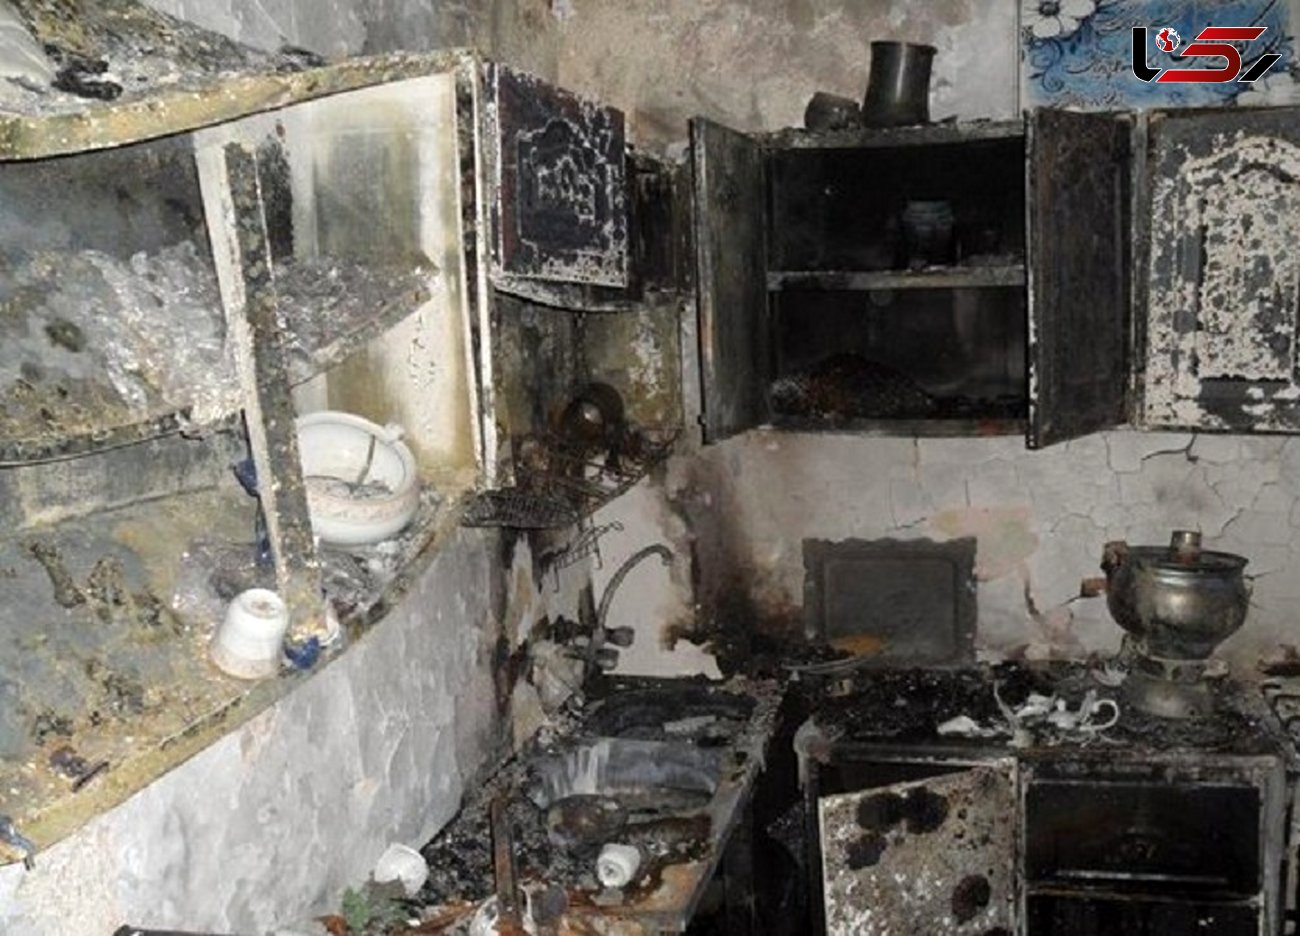 انفجار مرگبار منزل مسکونی در شیروان+ عکس